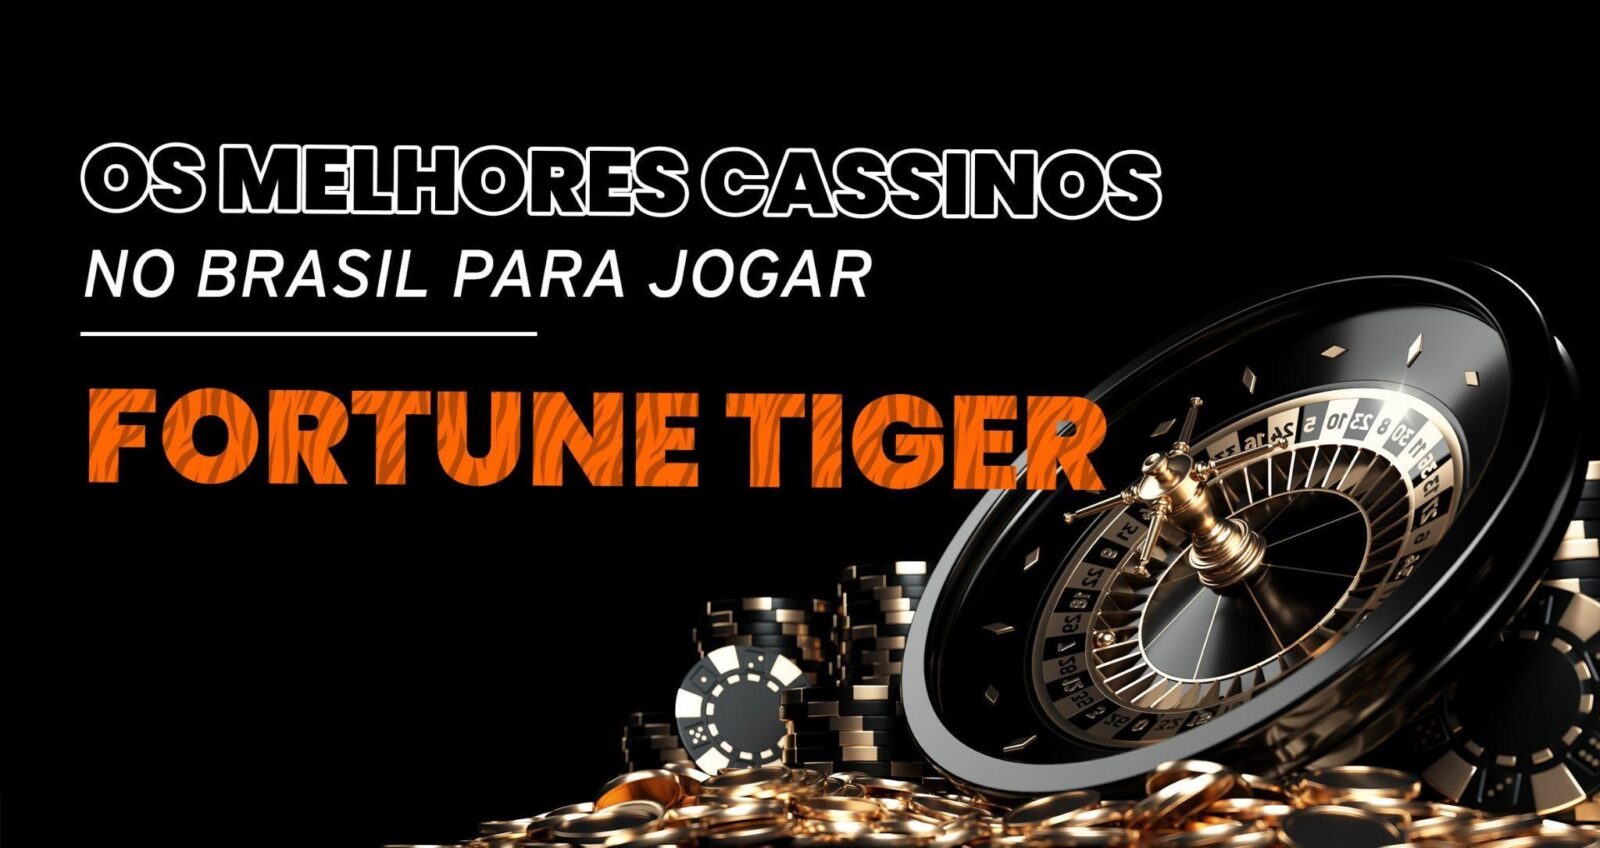 Os Melhores cassinos no Brasil para jogar Fortune tigre